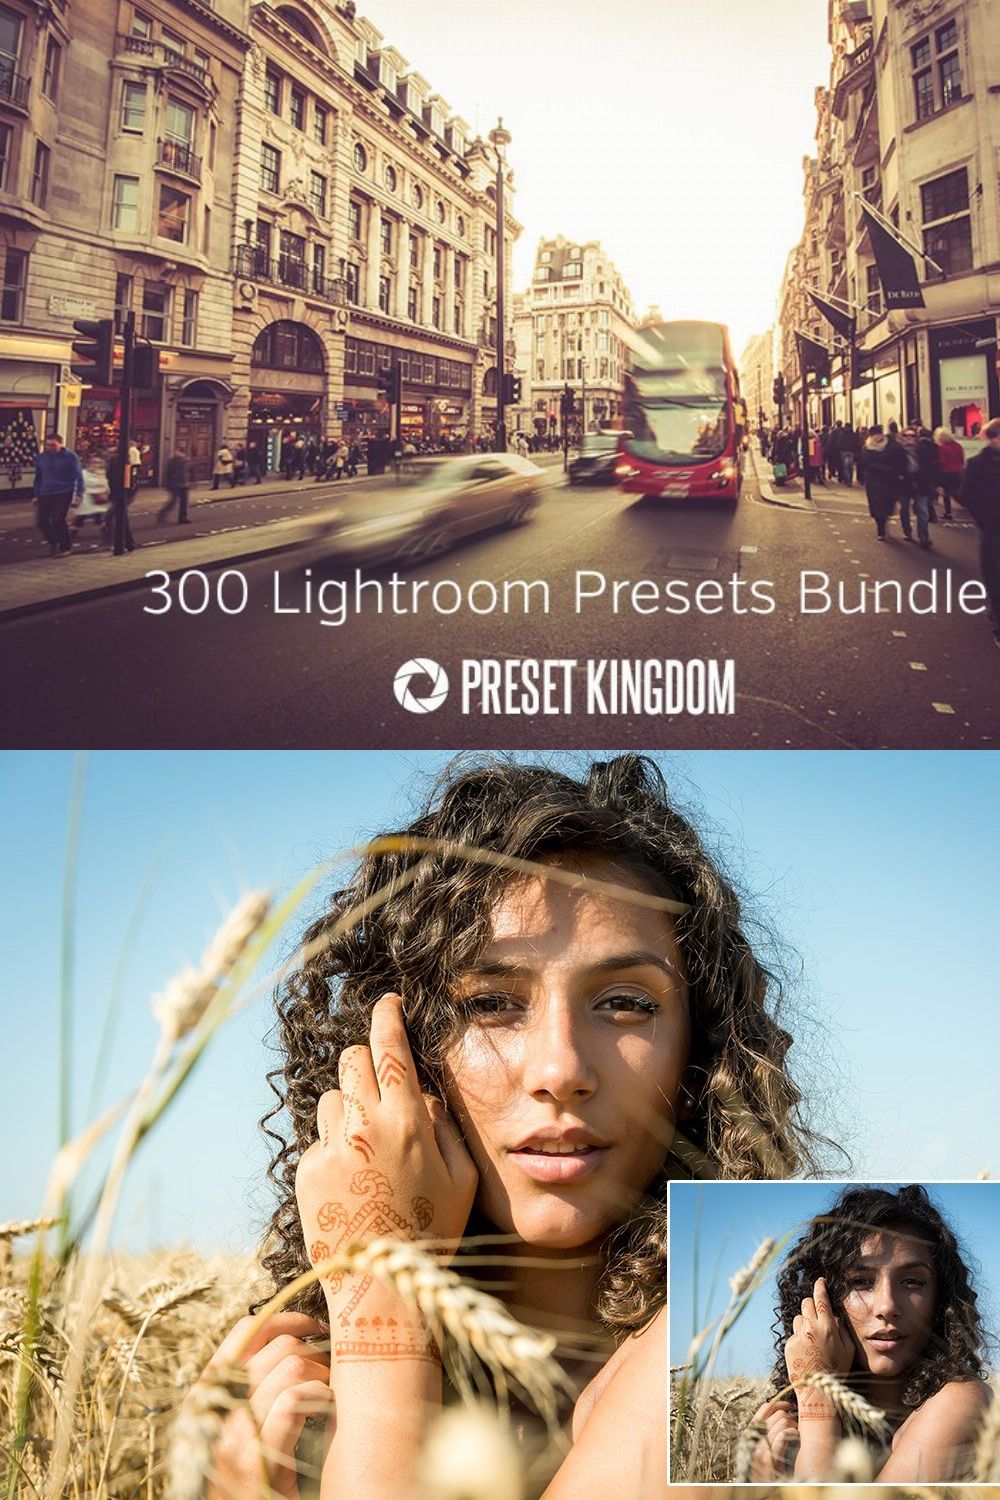 300 Lightroom Presets Bundle pinterest preview image.